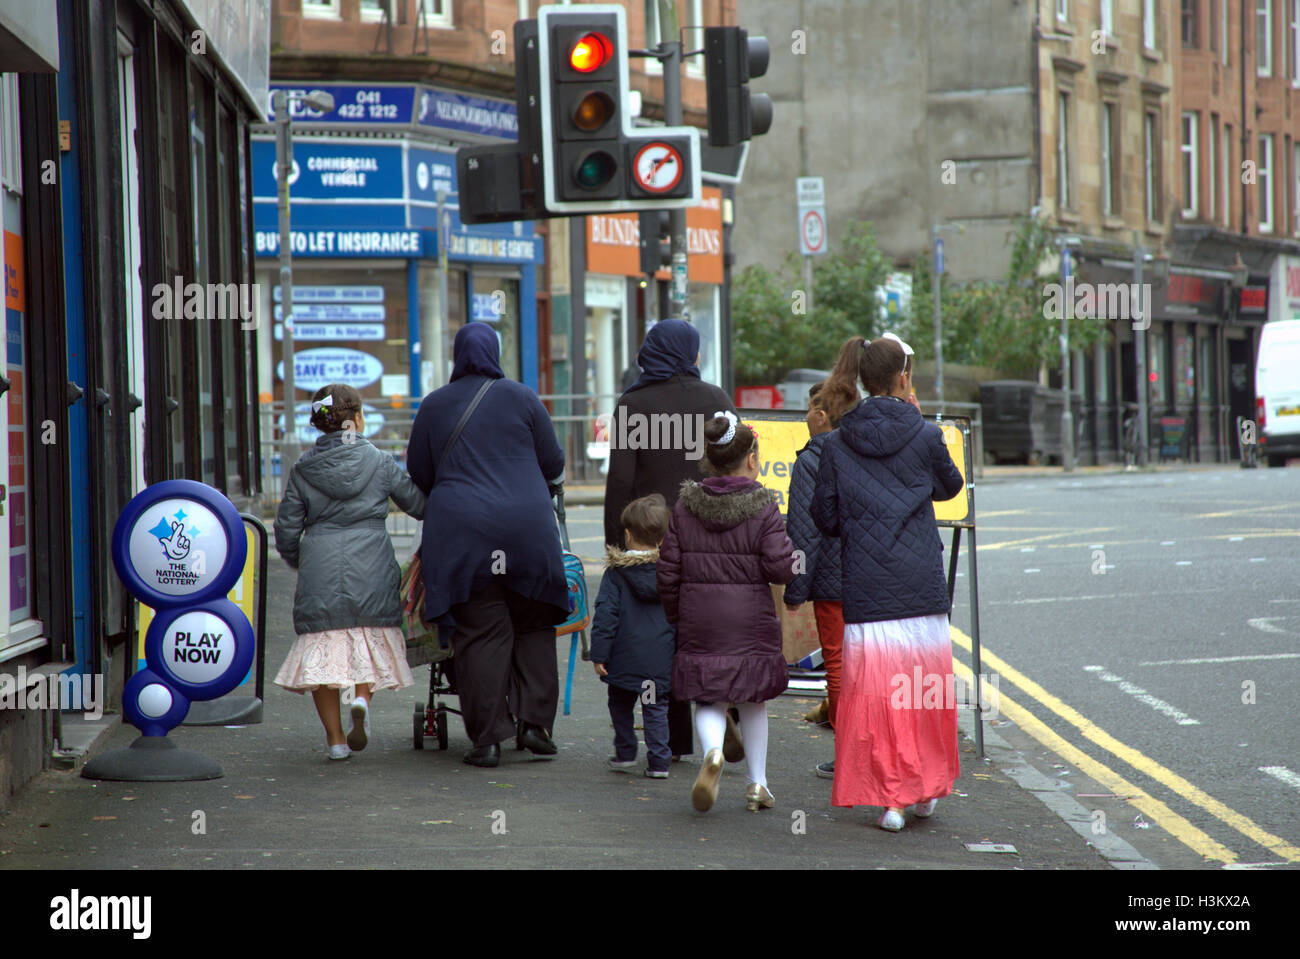 Asiatische Familie Flüchtling gekleidet Hijab Schal auf Straße in den UK alltägliche Szene Lotterie Zeichen Stockfoto